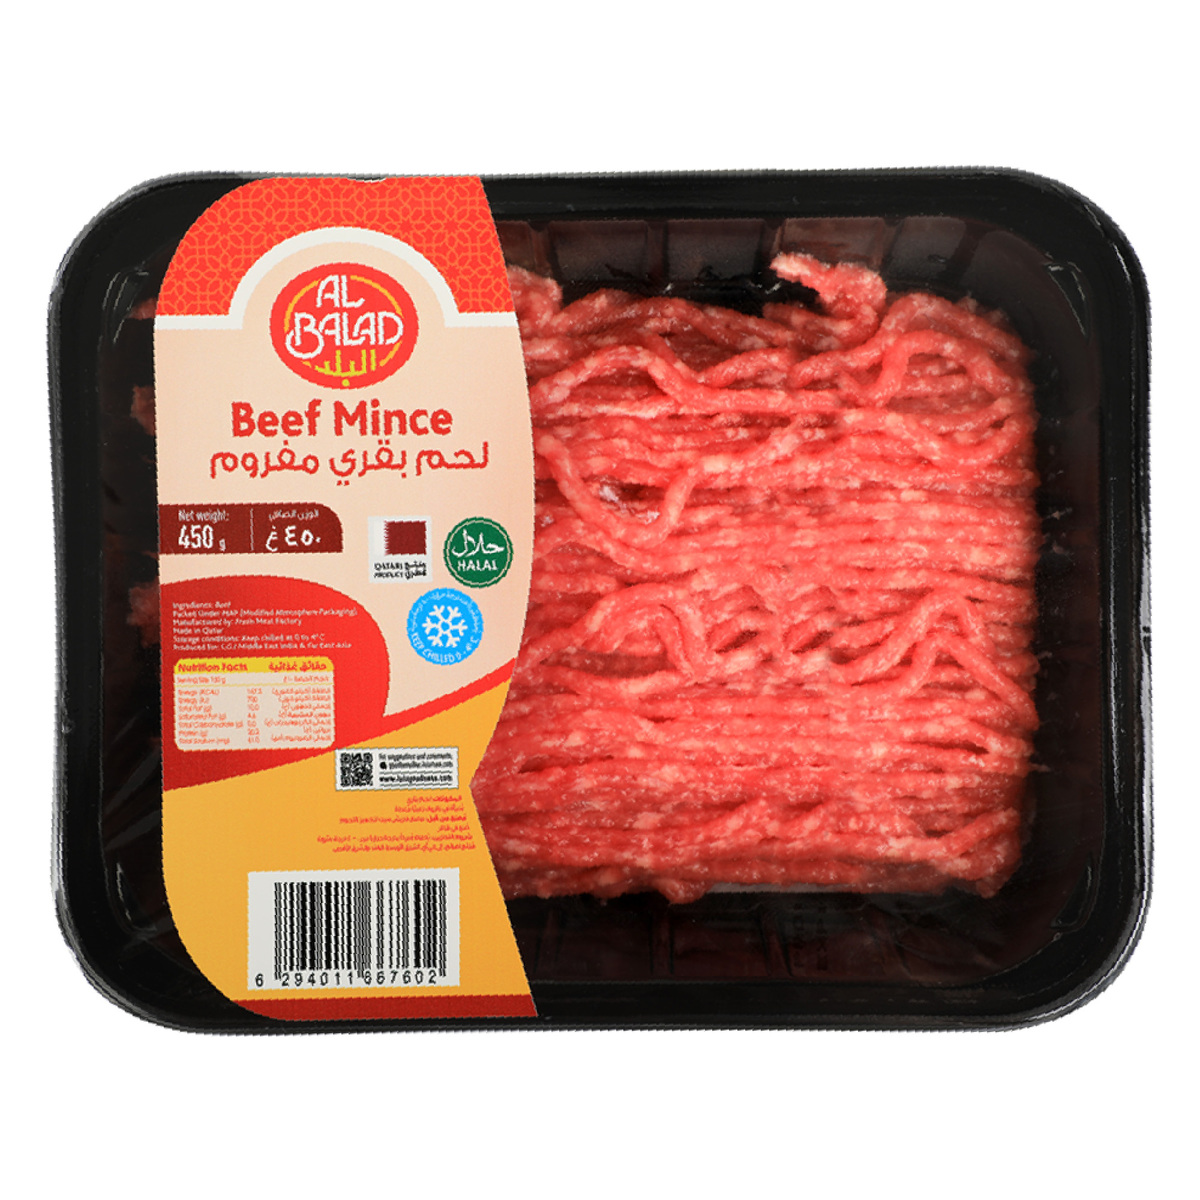 Al Balad Beef Mince 450 g